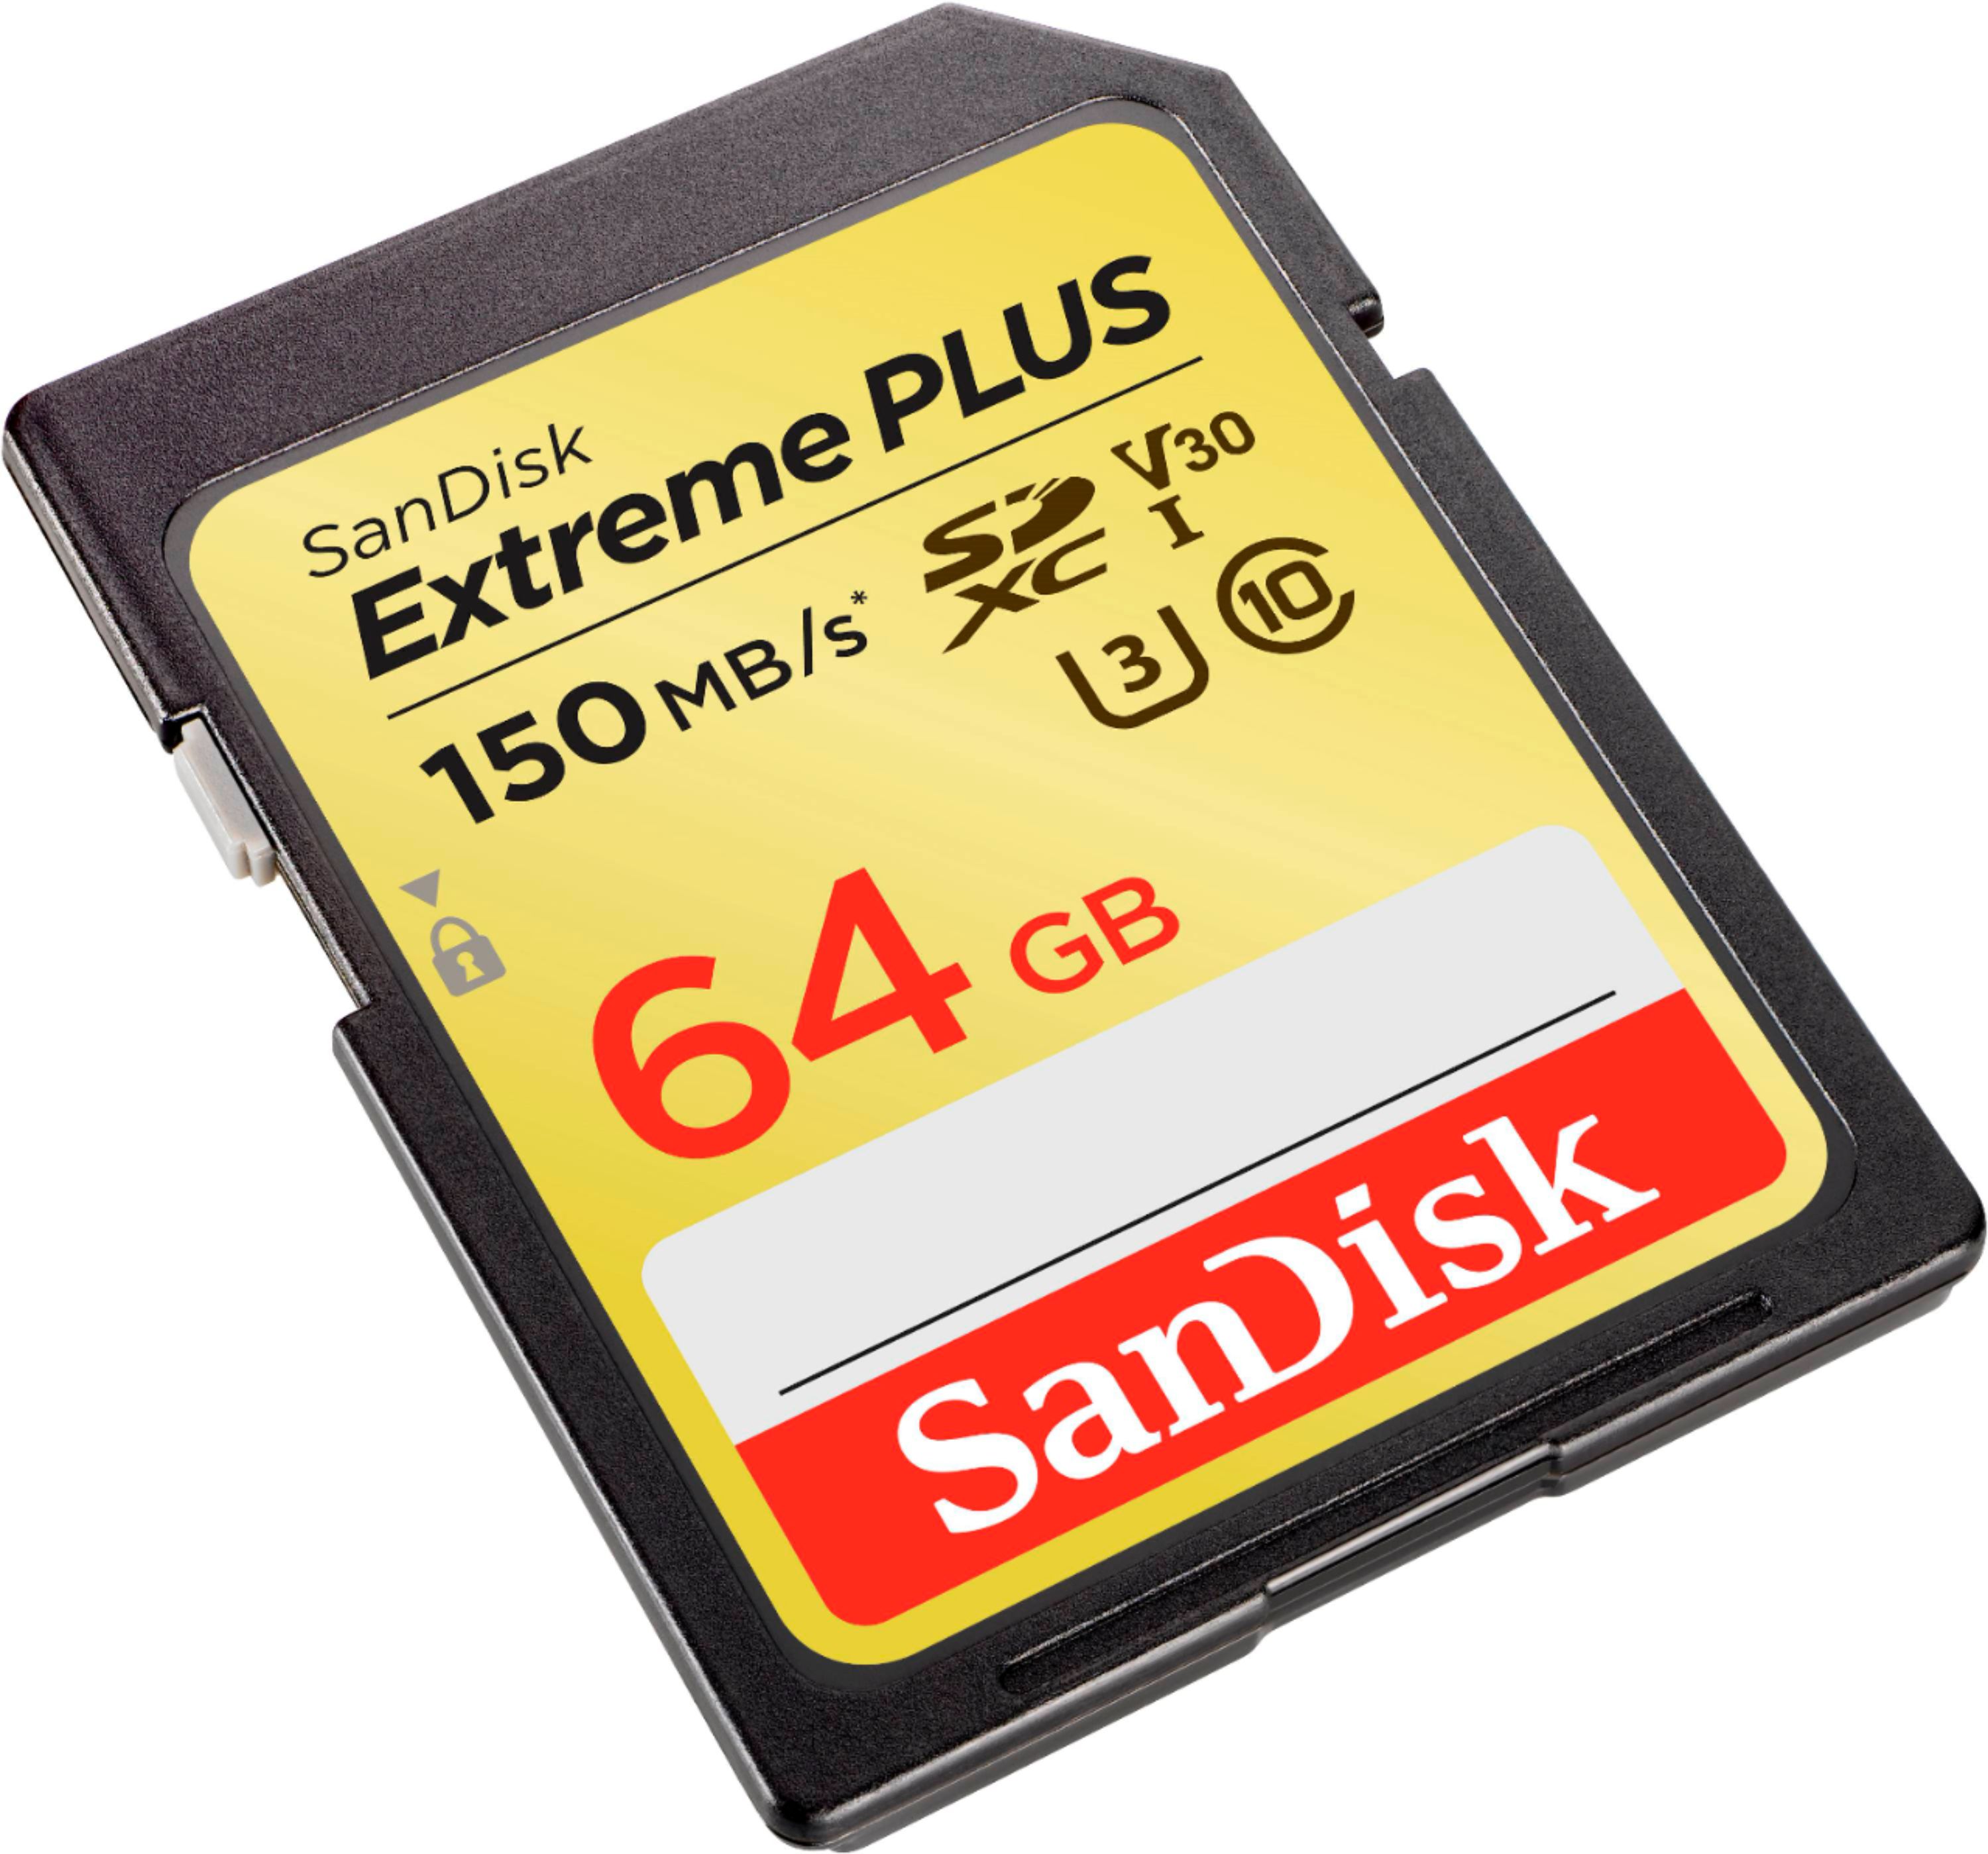 Compra una microSD SanDisk de 64 GB por dólares